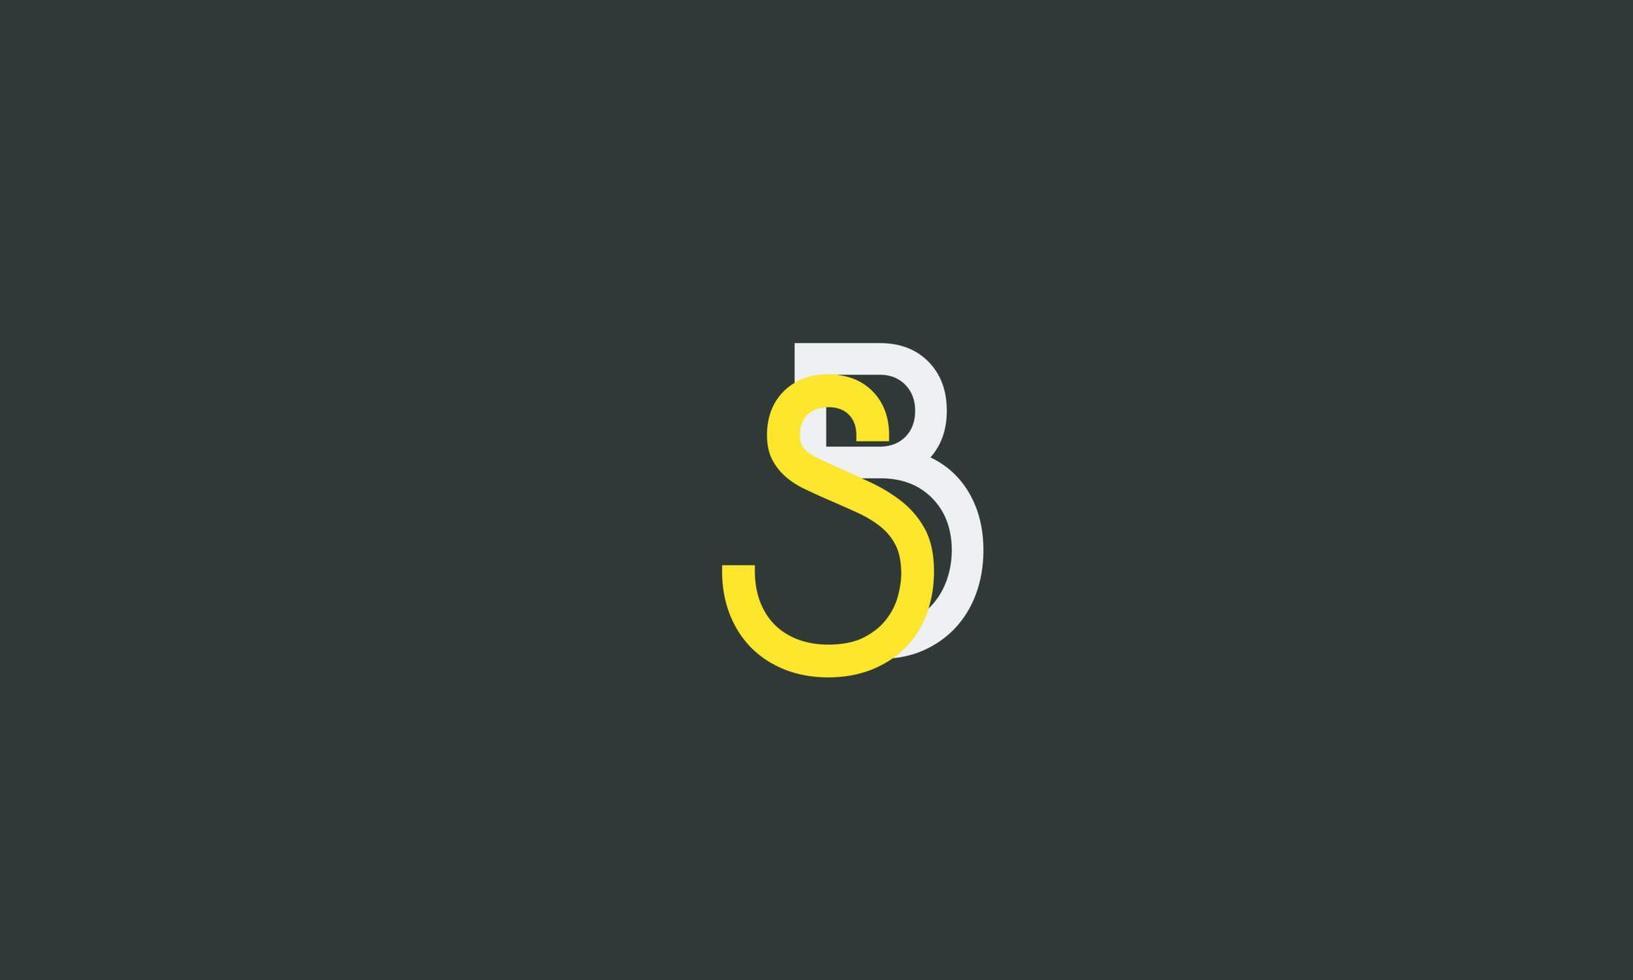 letras do alfabeto iniciais monograma logotipo sb, bs, s e b vetor